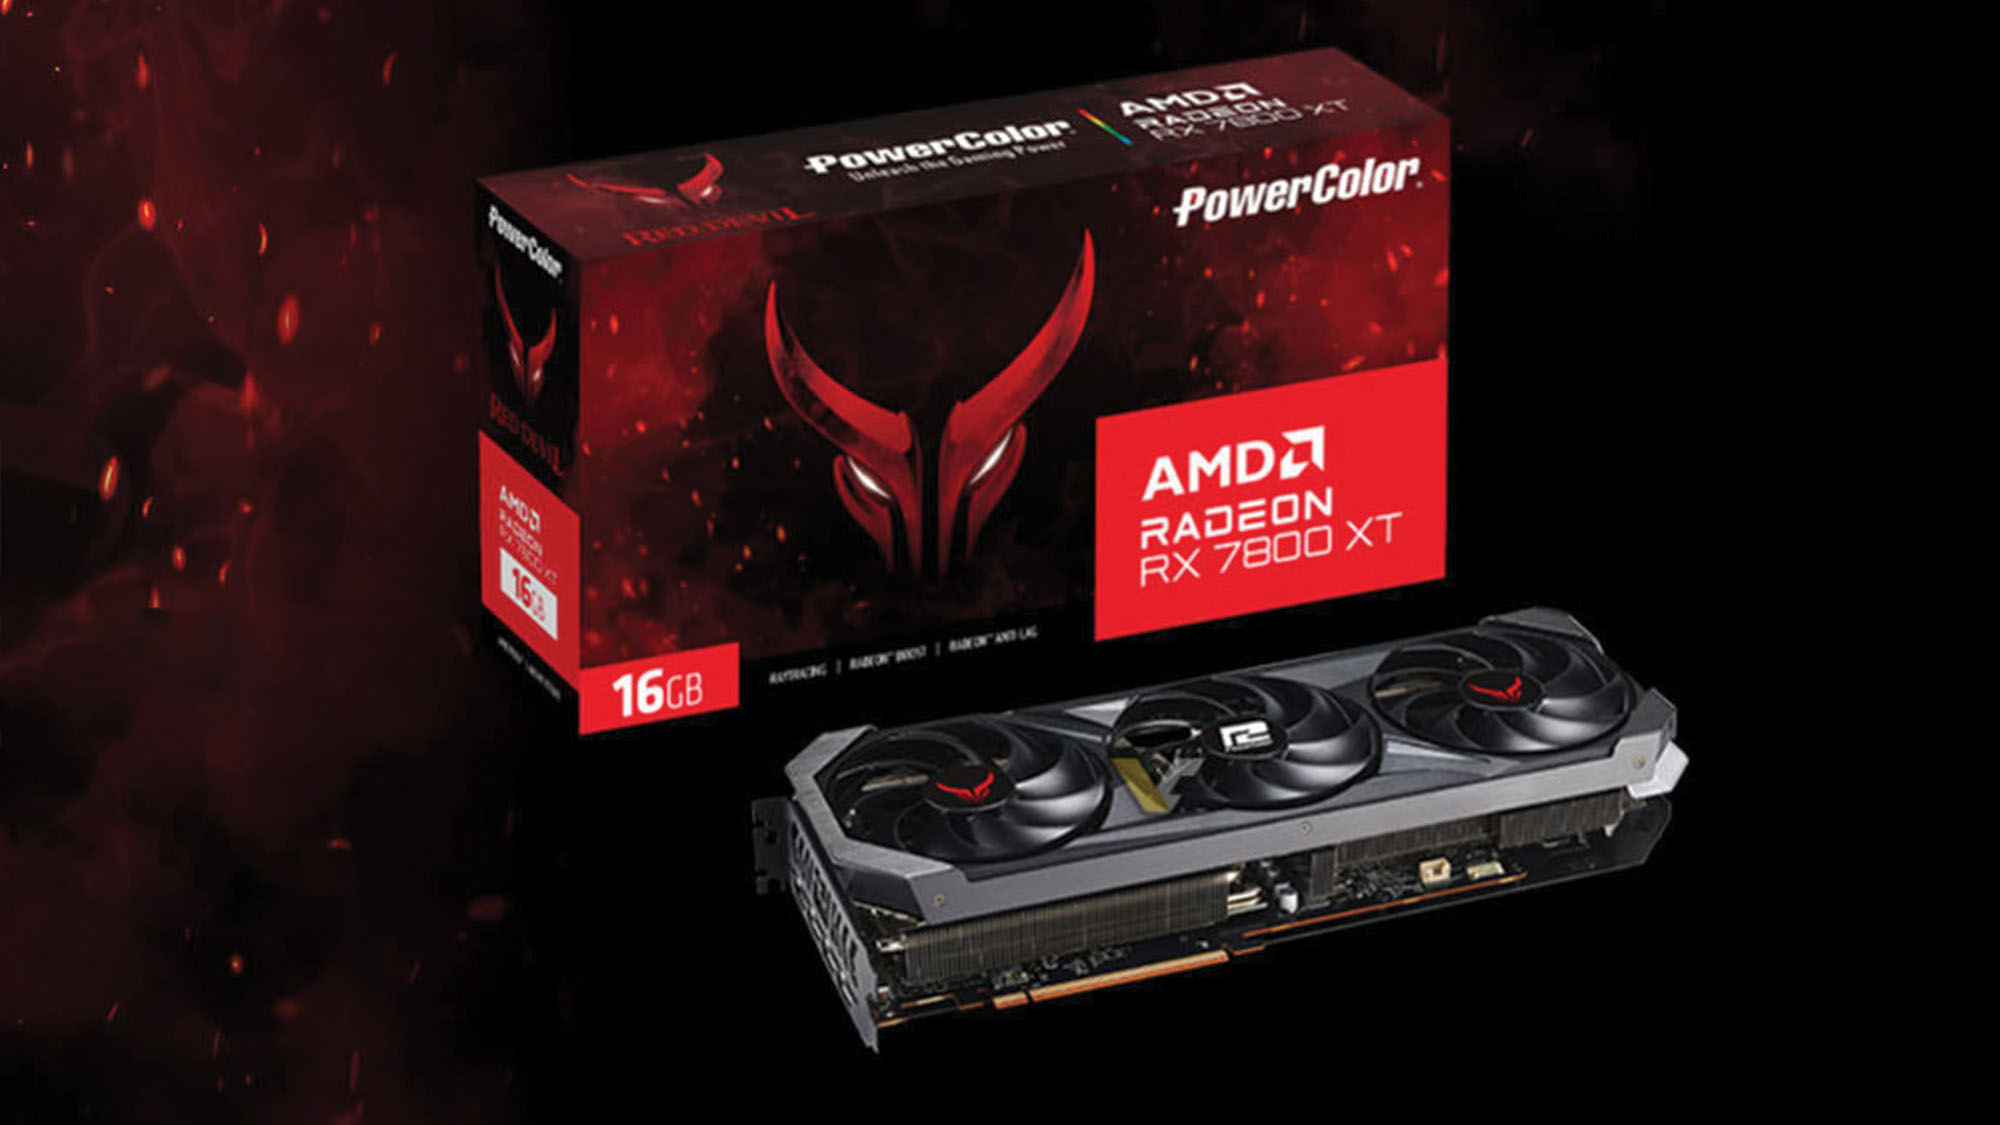 PowerColor взрывает его и представляет AMD Radeon RX 7800 XT за несколько недель до его анонса